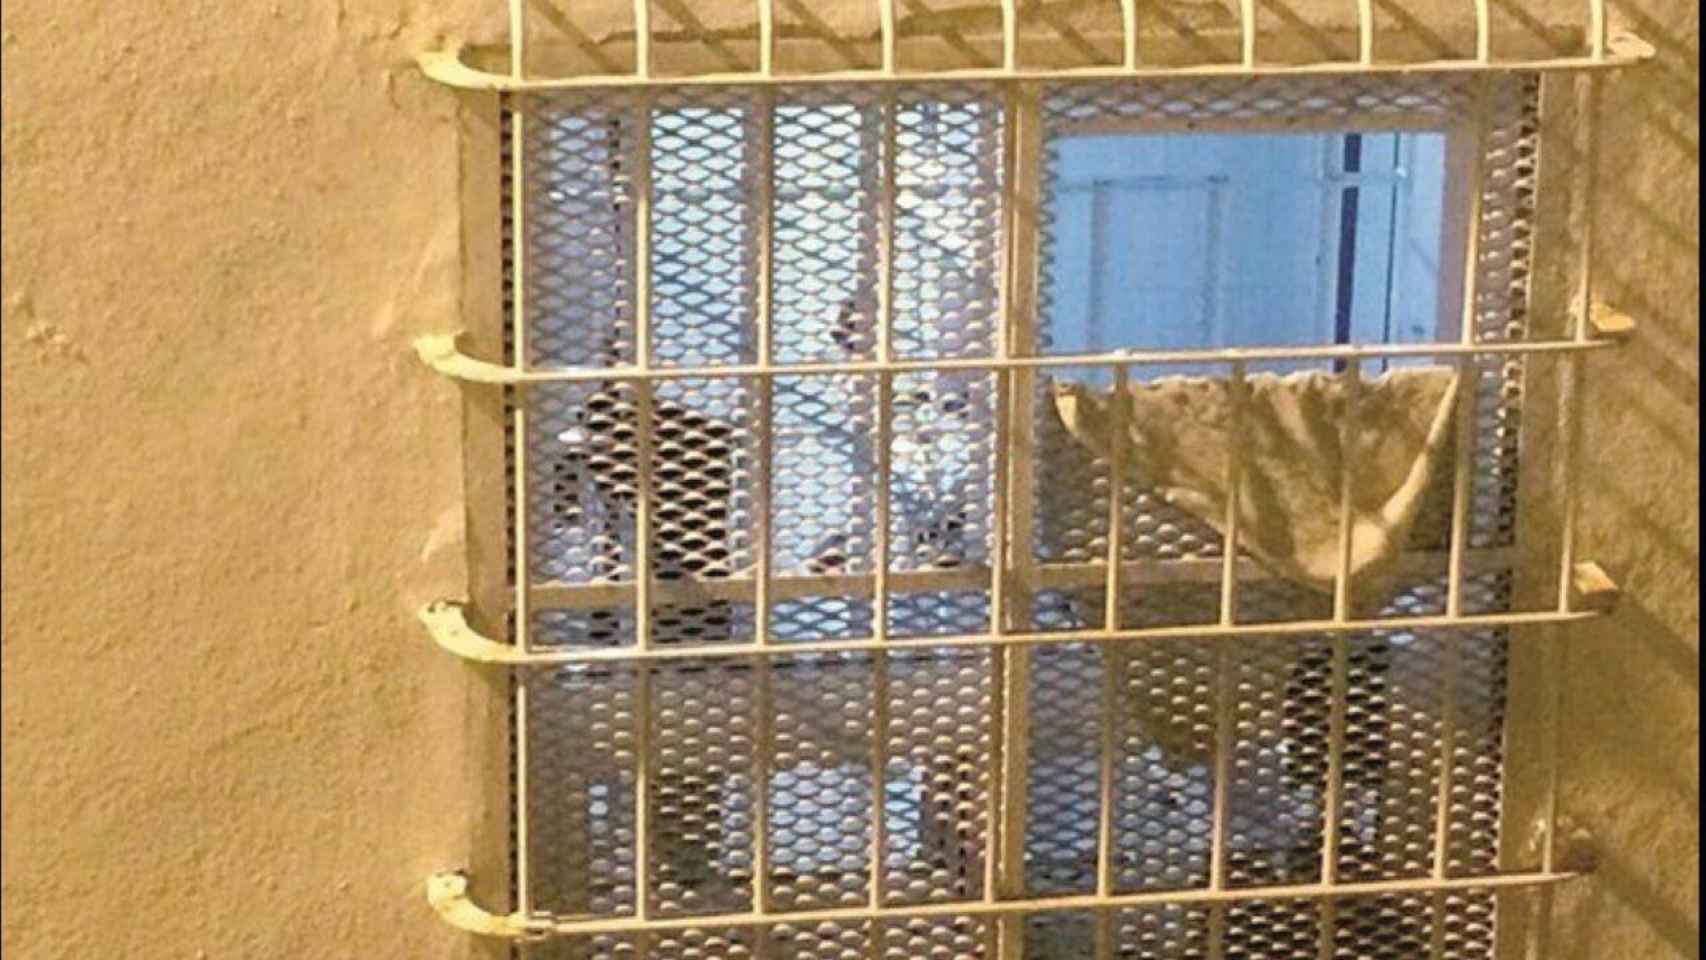 Imagen enviada por Matos a EL ESPAÑOL mostrando cómo quedo la ventana de su celda.